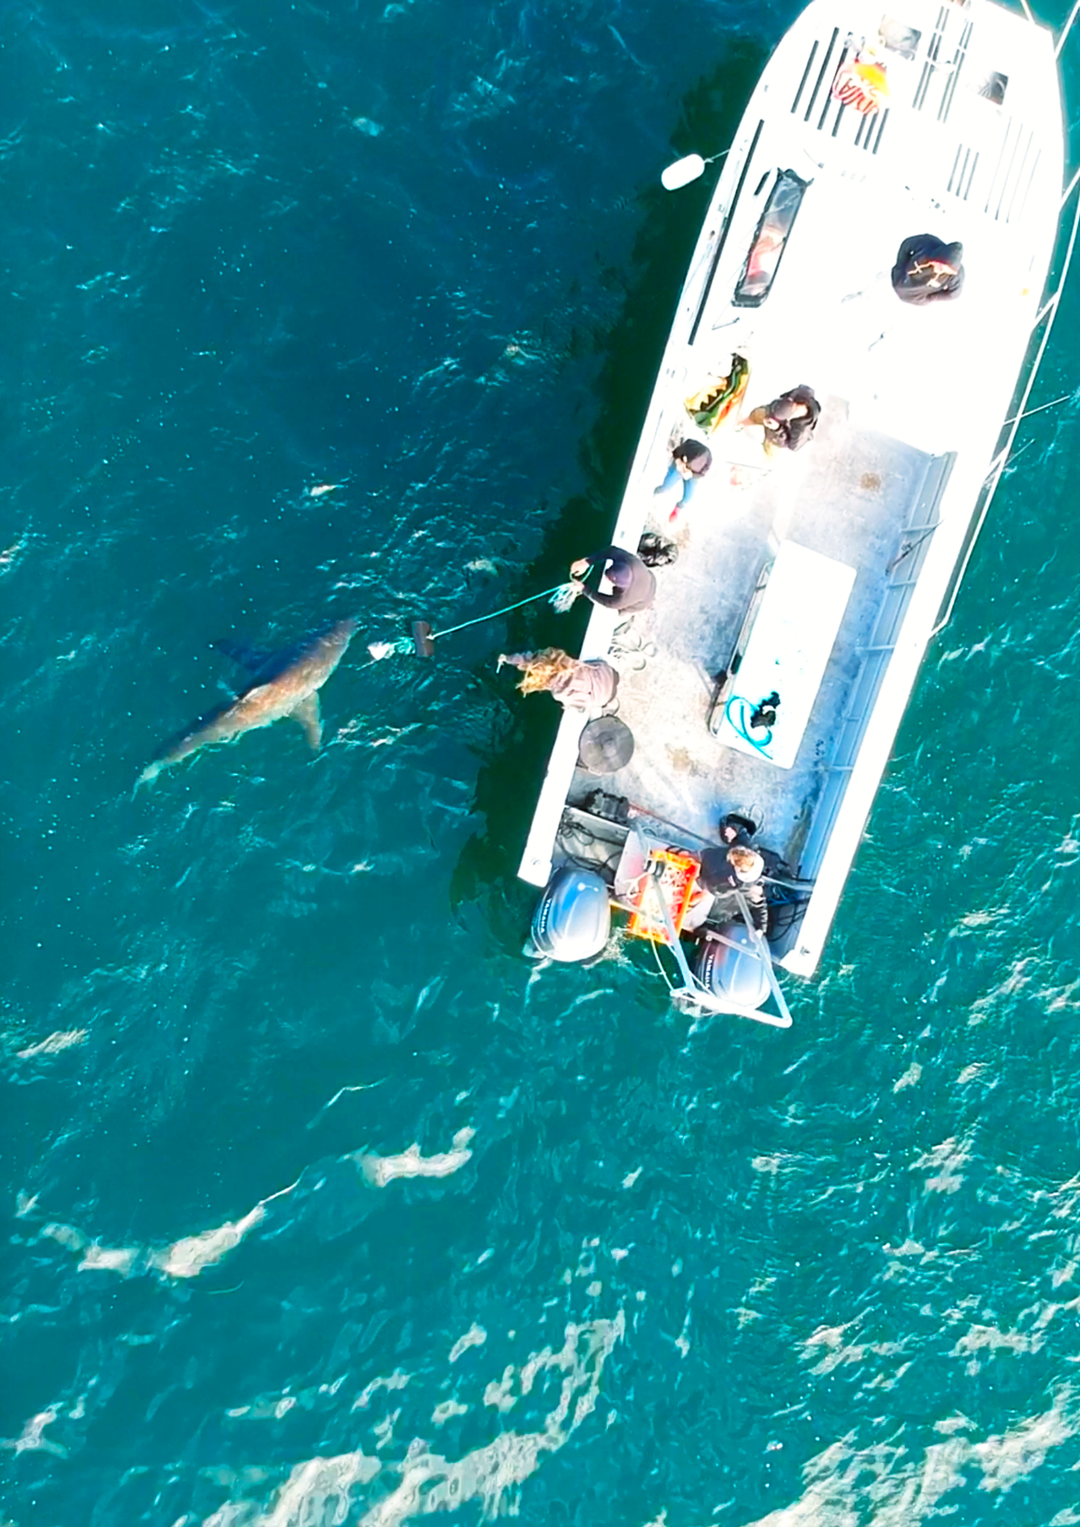 Great White Shark Program, chum trip "white shark ocean"